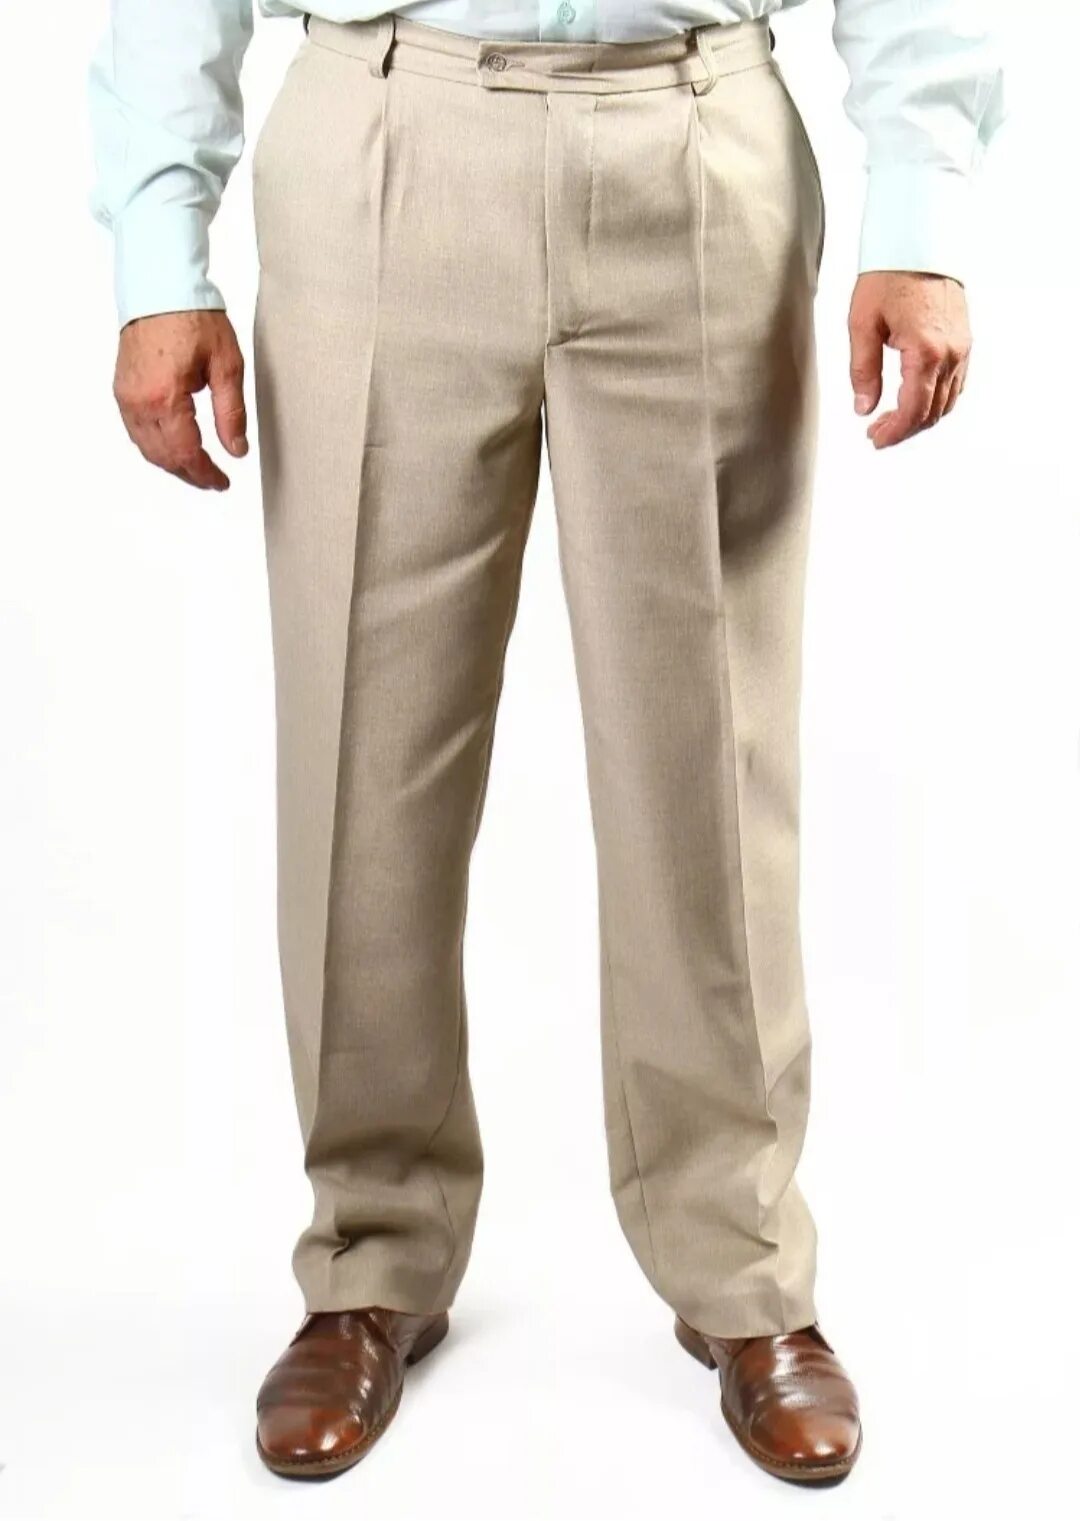 Benetton мужские брюки Cotton Linen. Брюки мужские классические. Летние классические брюки для мужчин. Мужчина в классических брюках. Купить штаны мужские большого размера